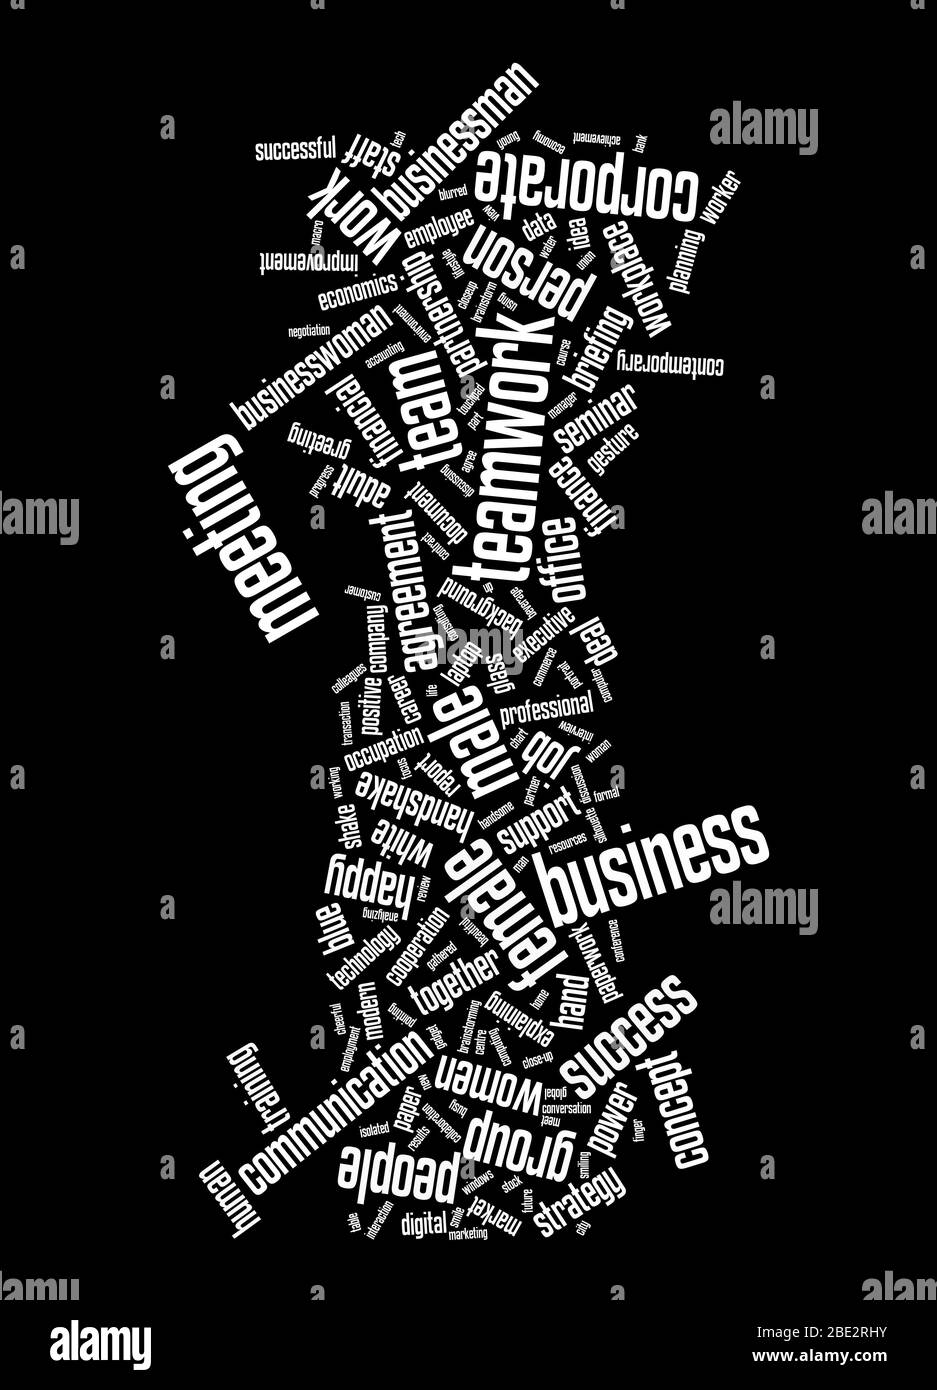 Eine Wortwolke mit zahlreichen Begriffen zum Thema 'Business' Stock Photo